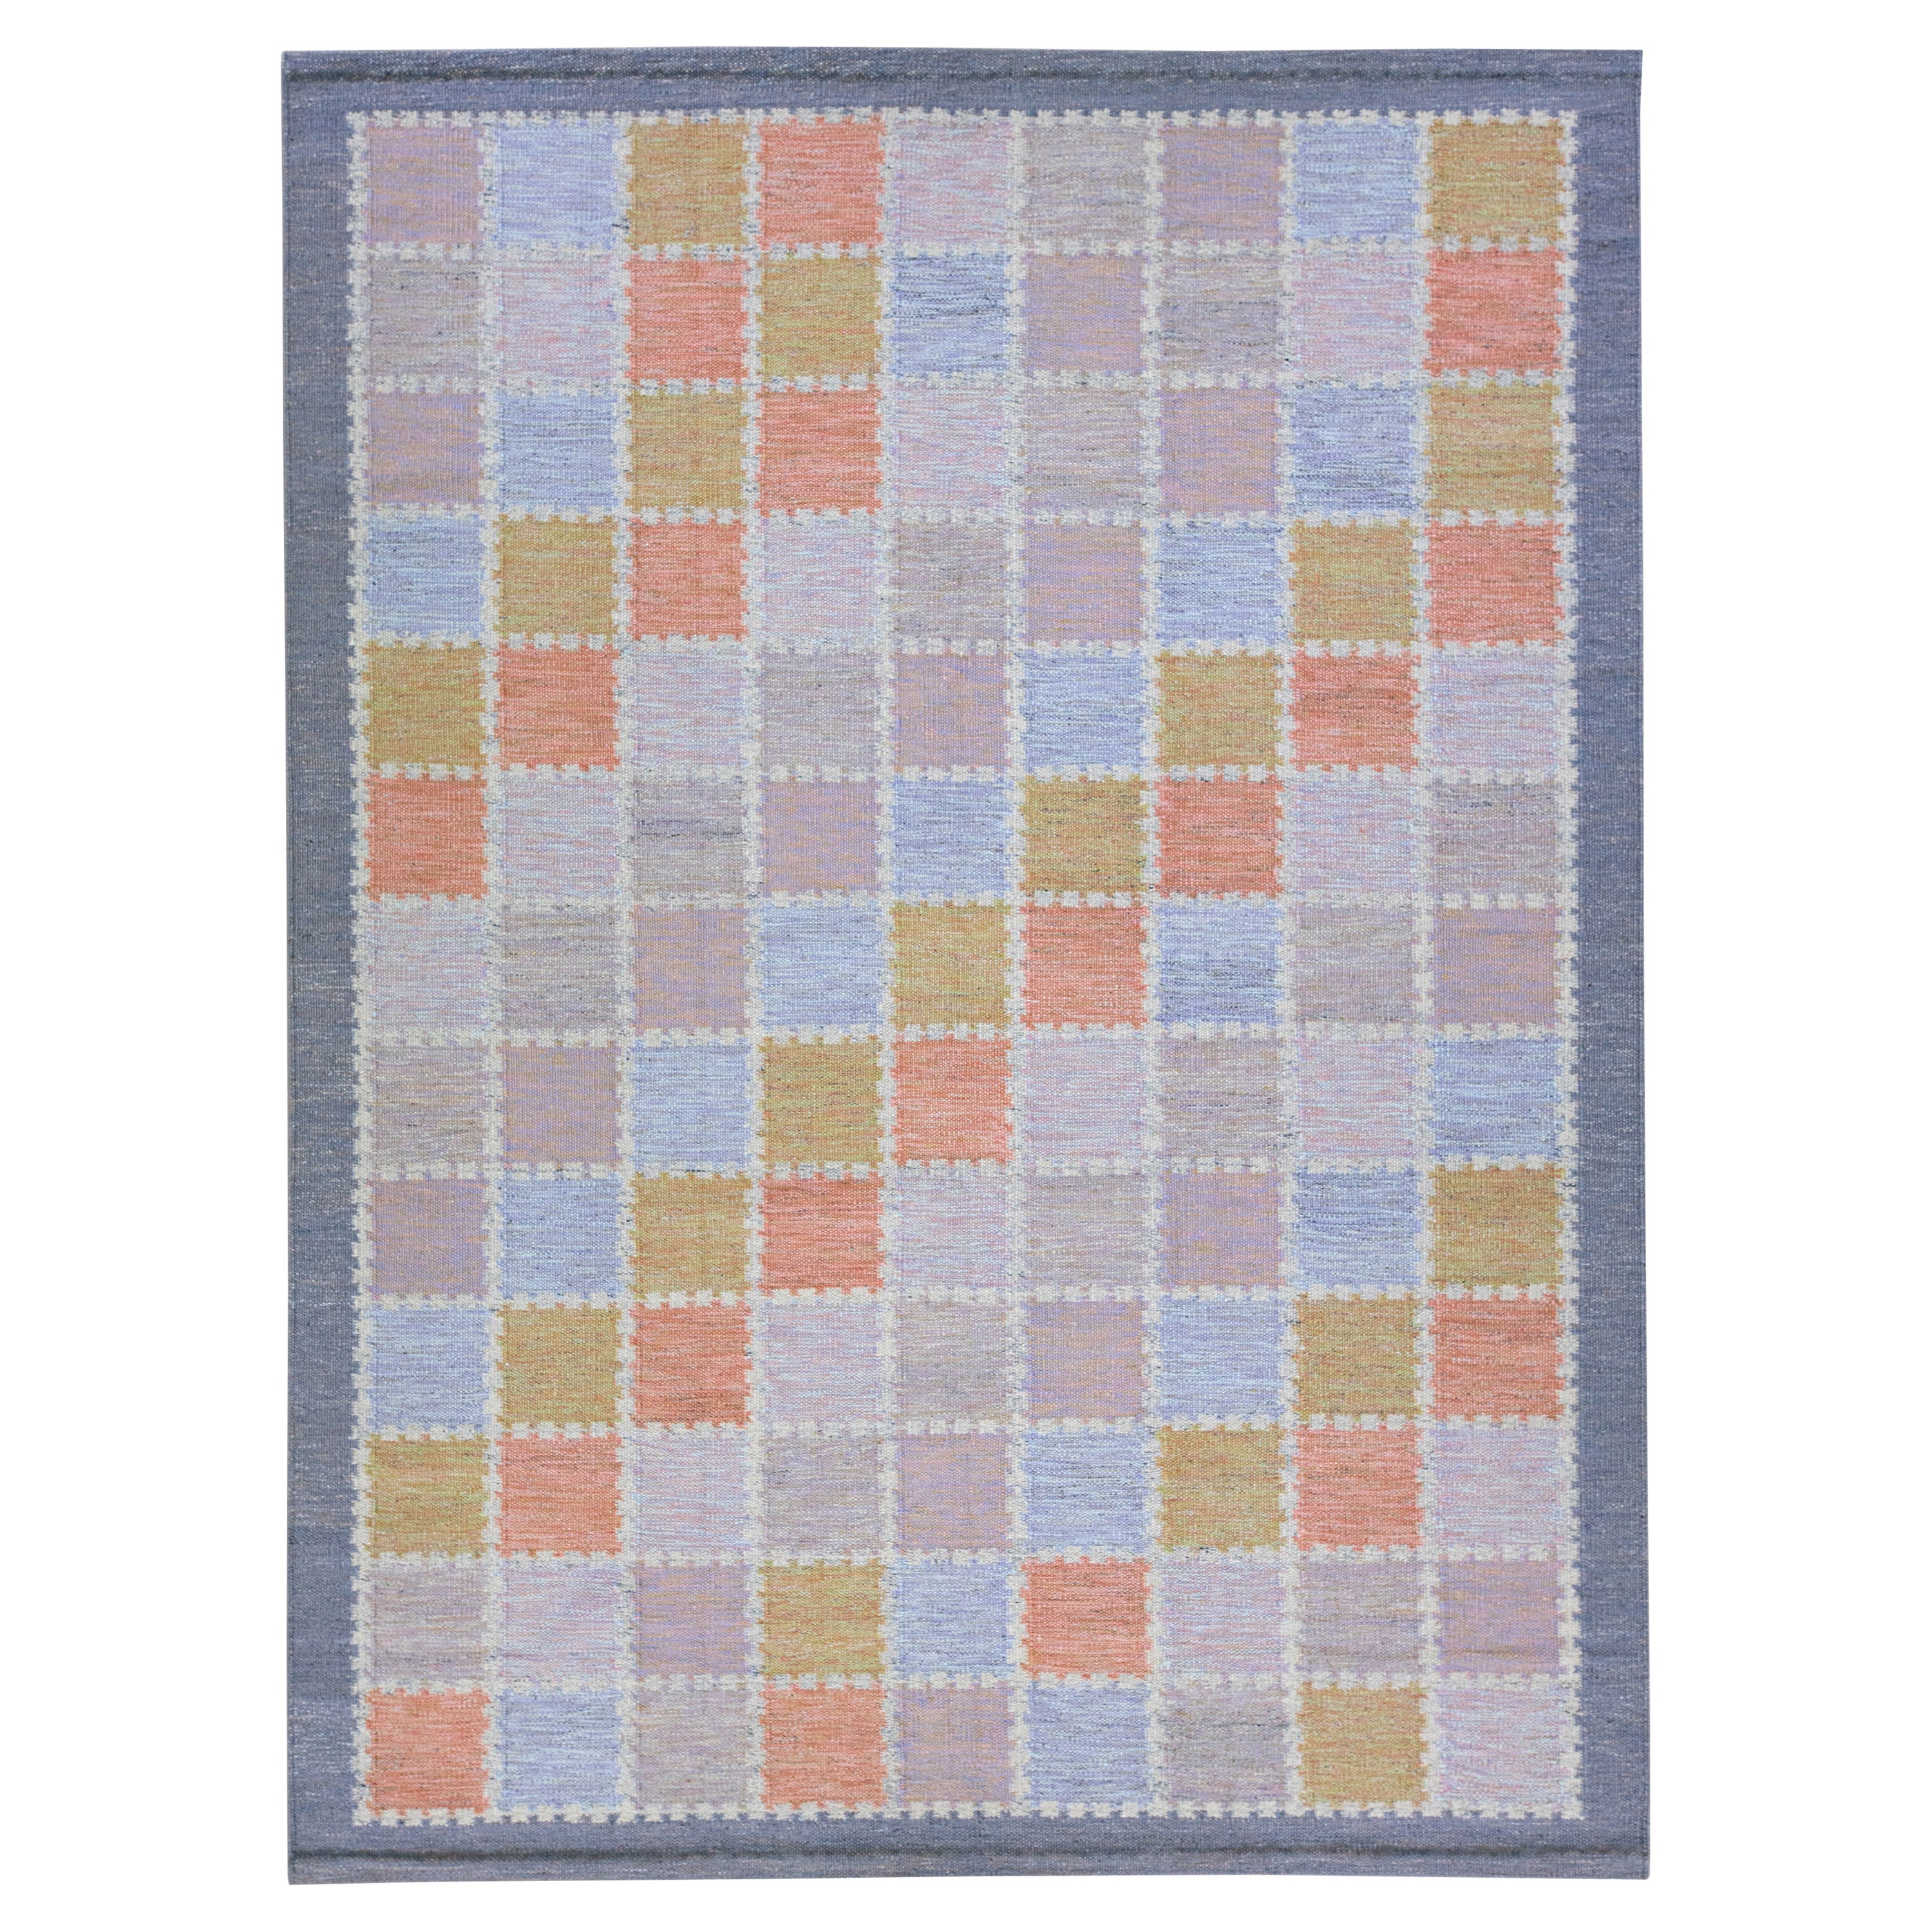 Tapis en laine moderne scandinave multicolore fait à la main, de taille géométrique pour une pièce